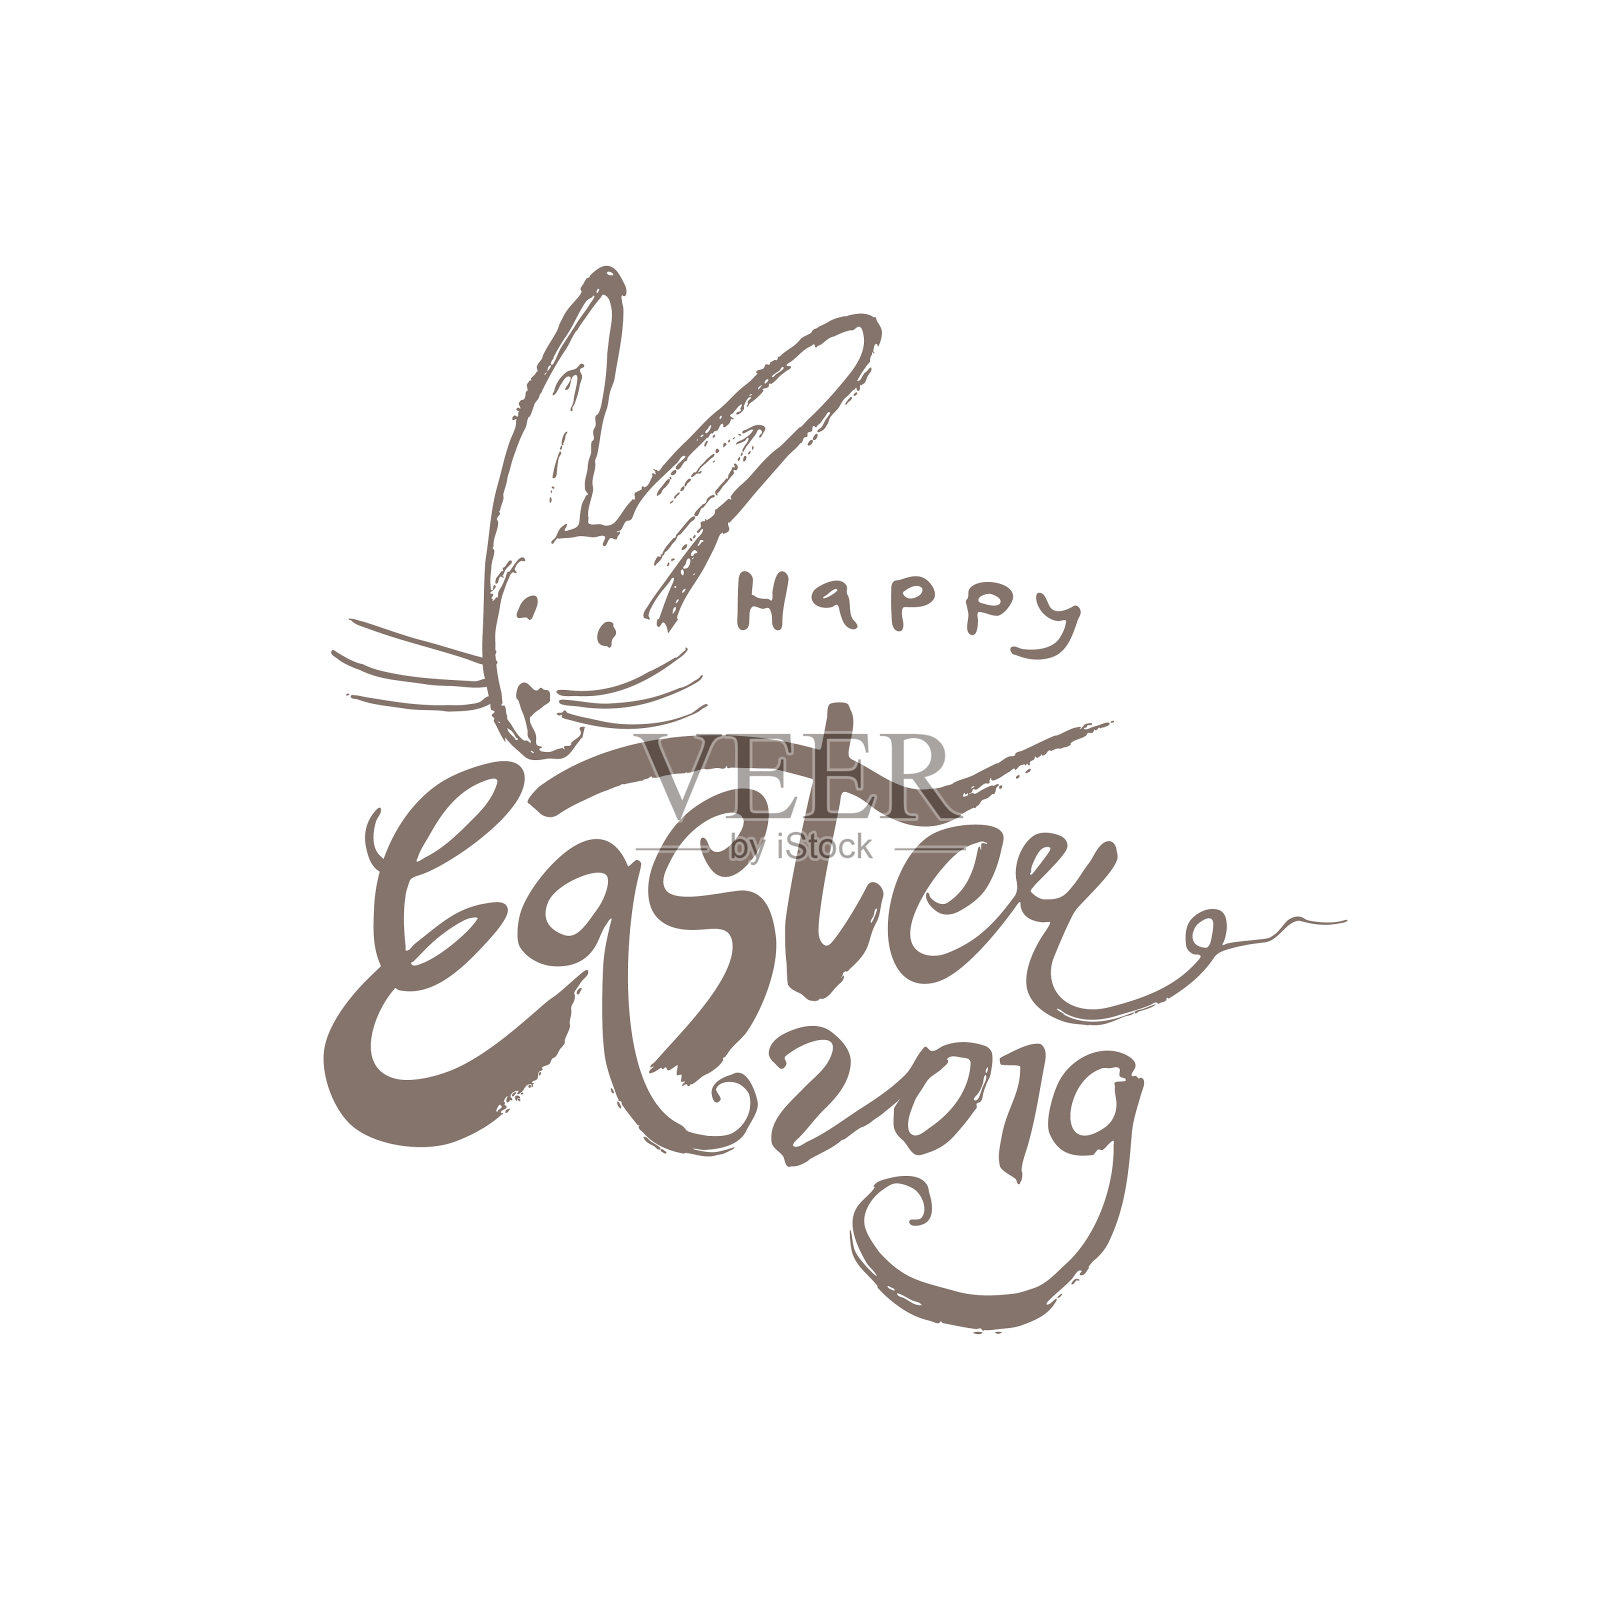 2019年复活节快乐。矢量标志ogo与复活节兔子的肖像干刷画。插画图片素材